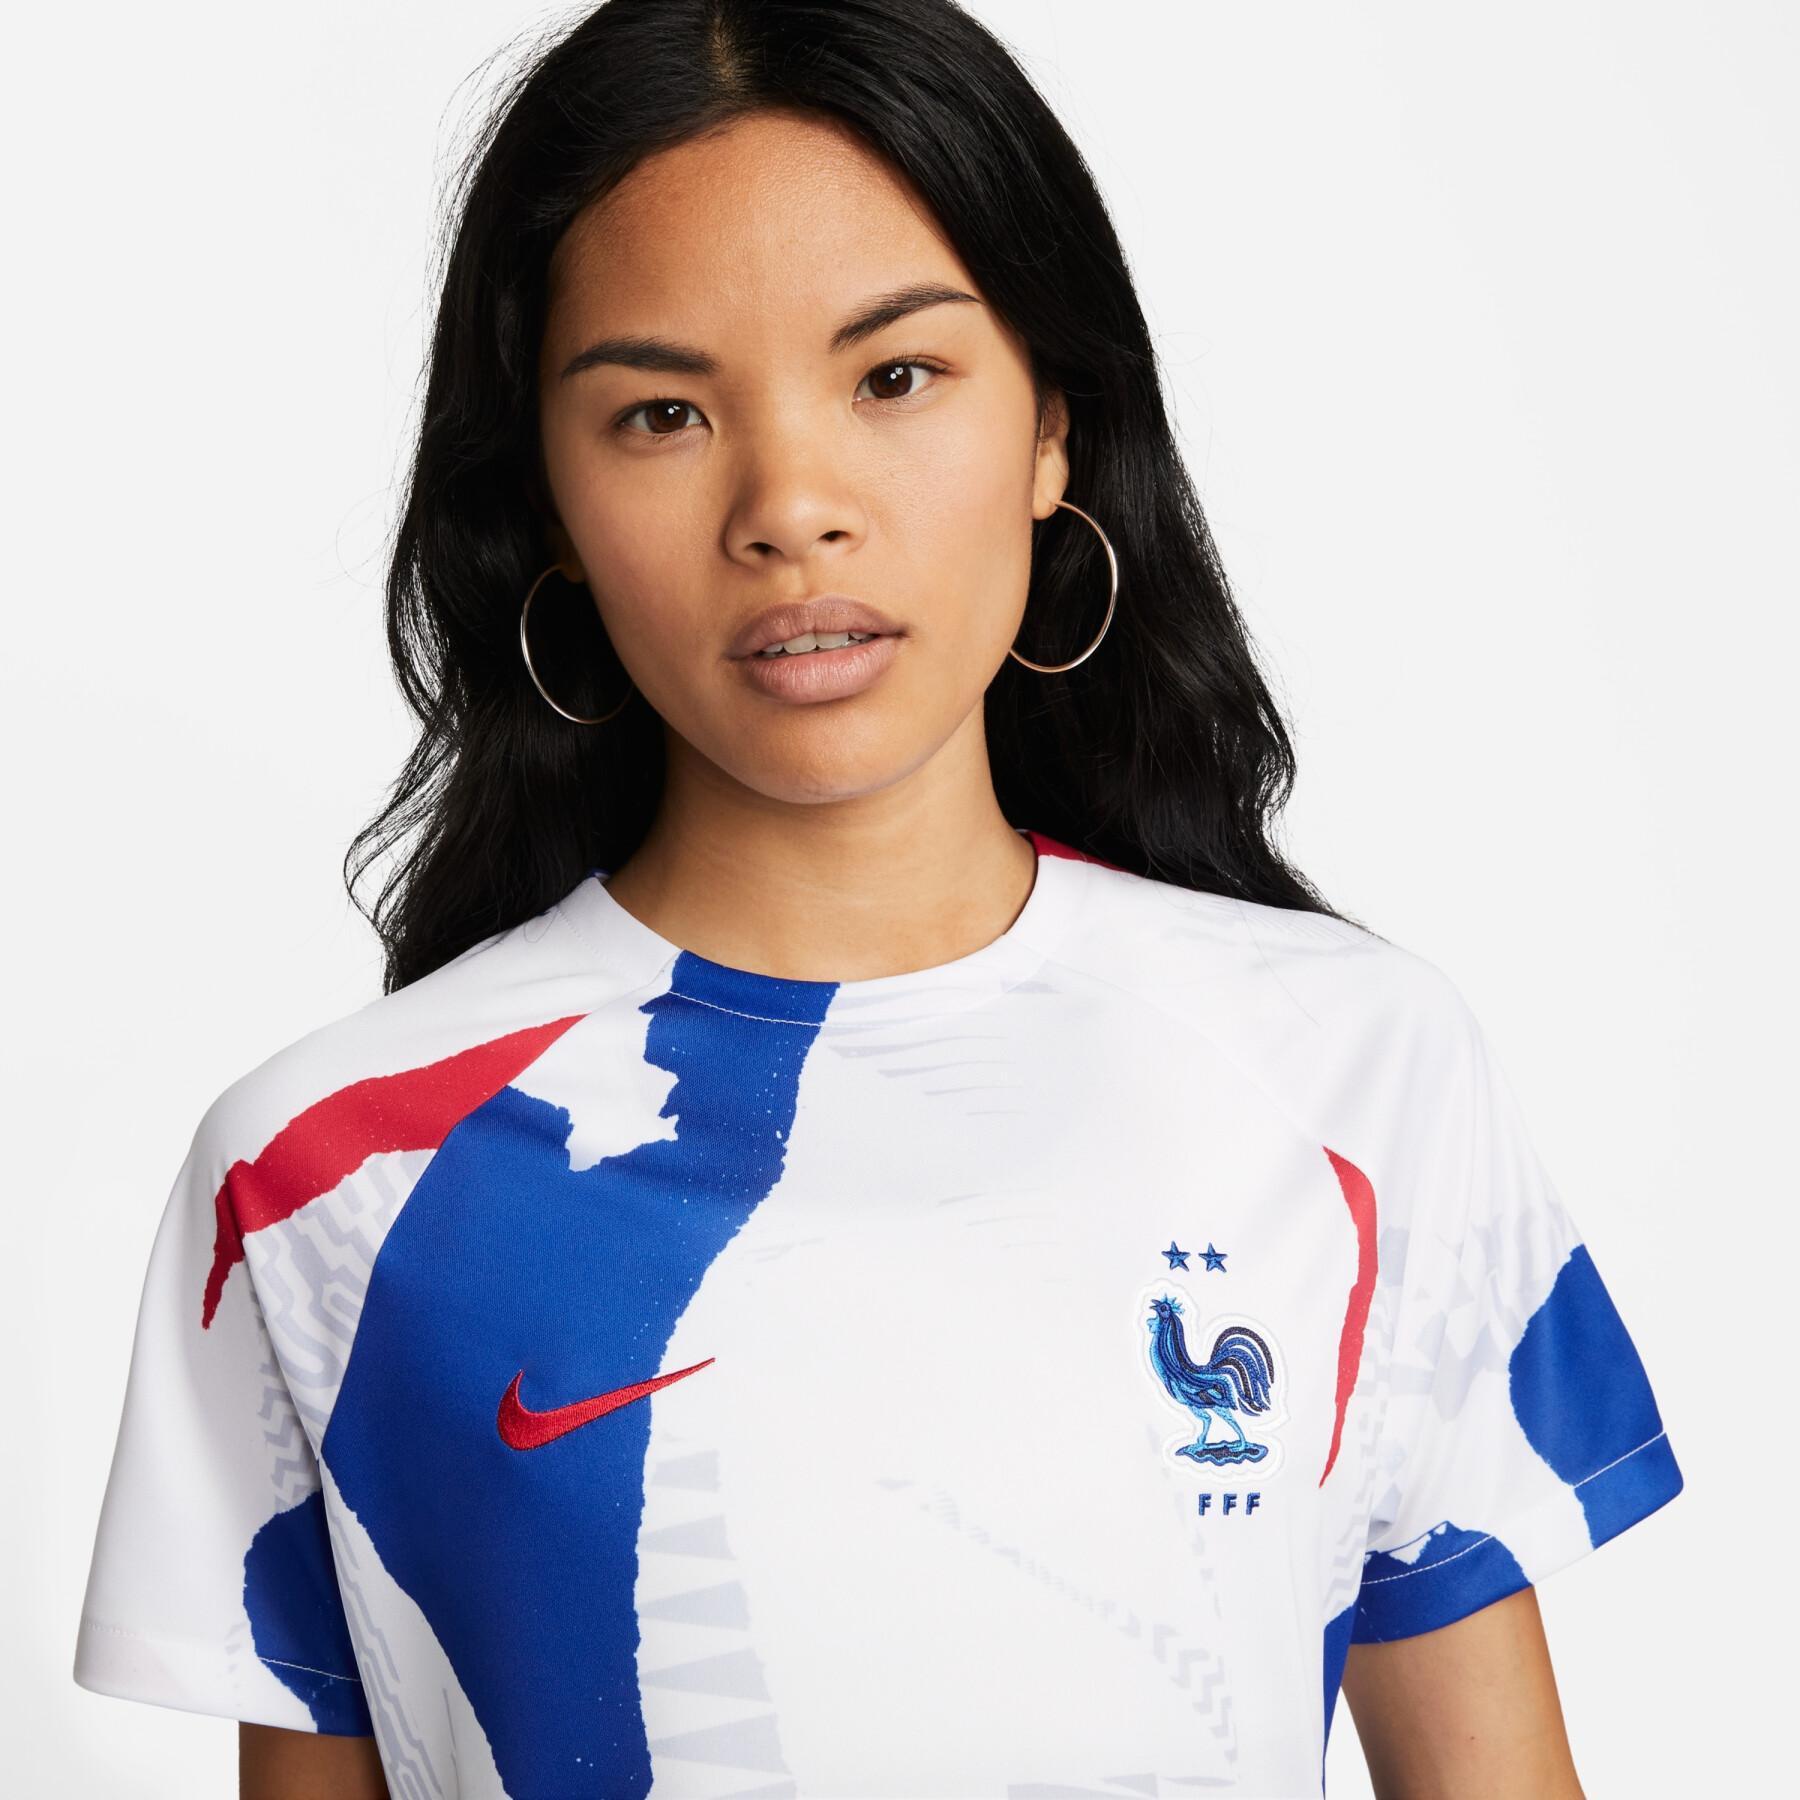 Koszulka przedmeczowa dla kobiet na Mistrzostwa Świata 2022 France